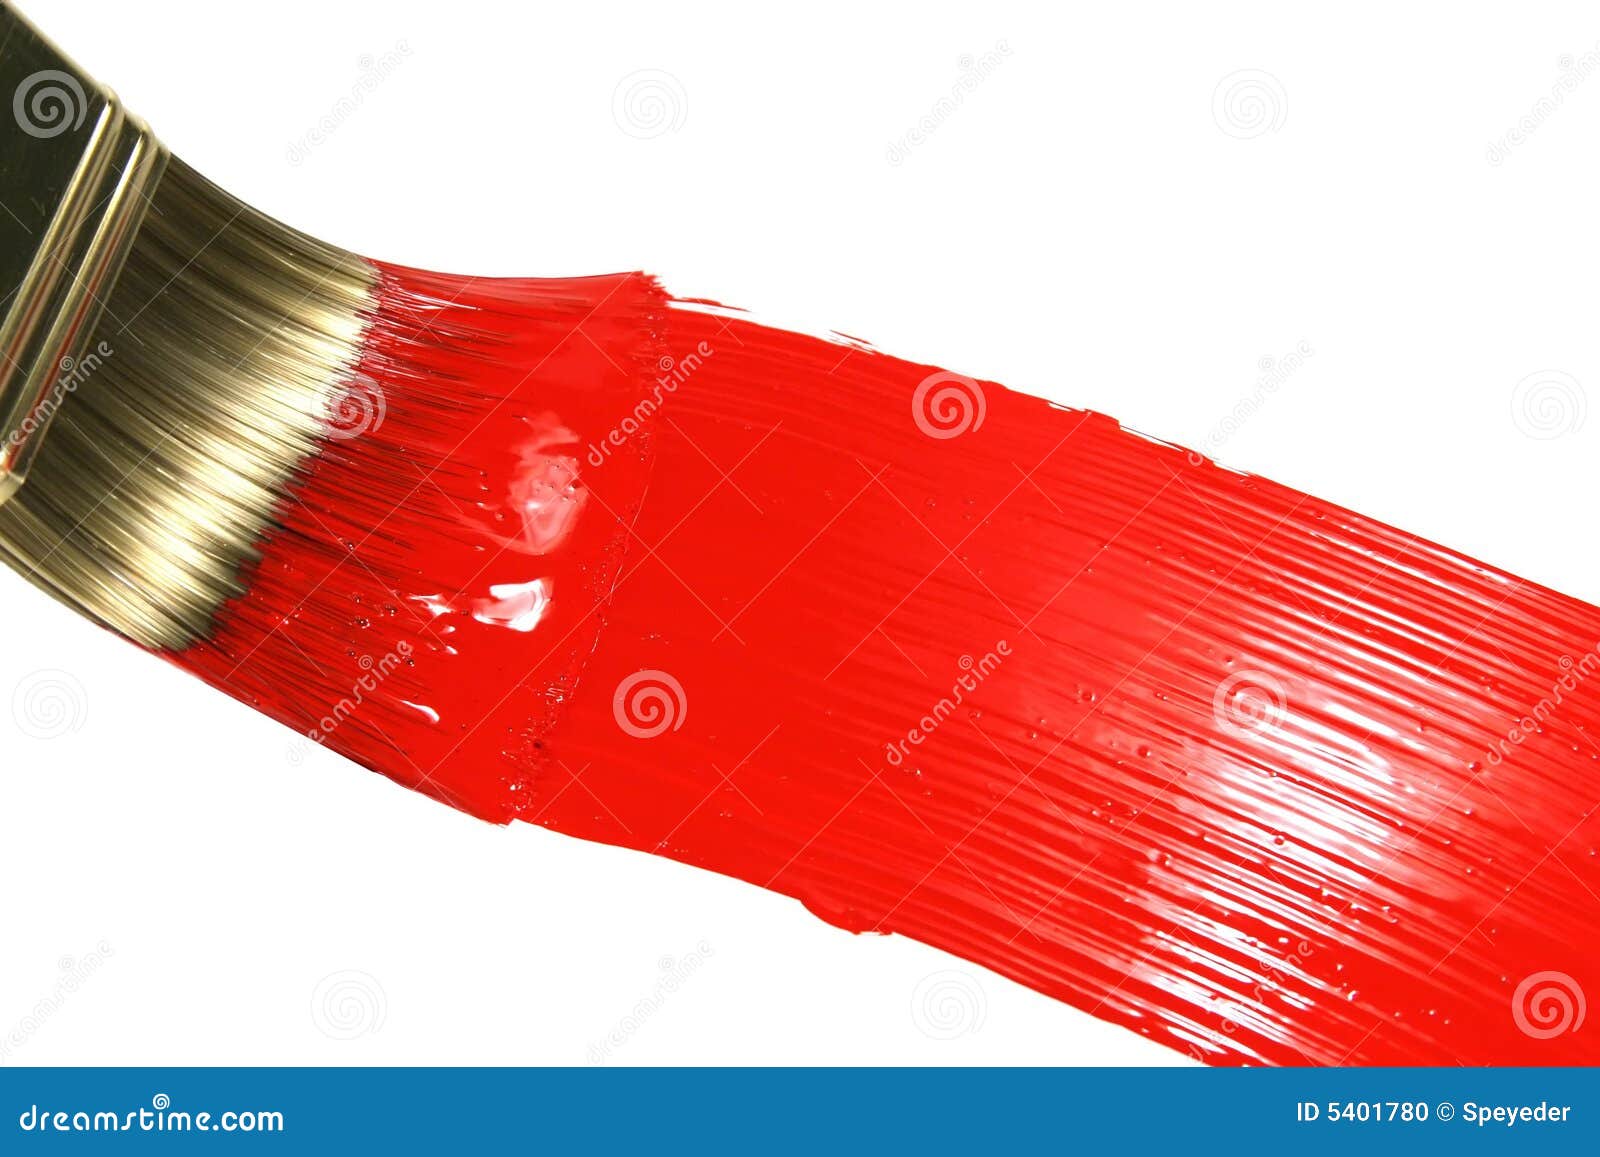 red-brush-stroke-5401780.jpg